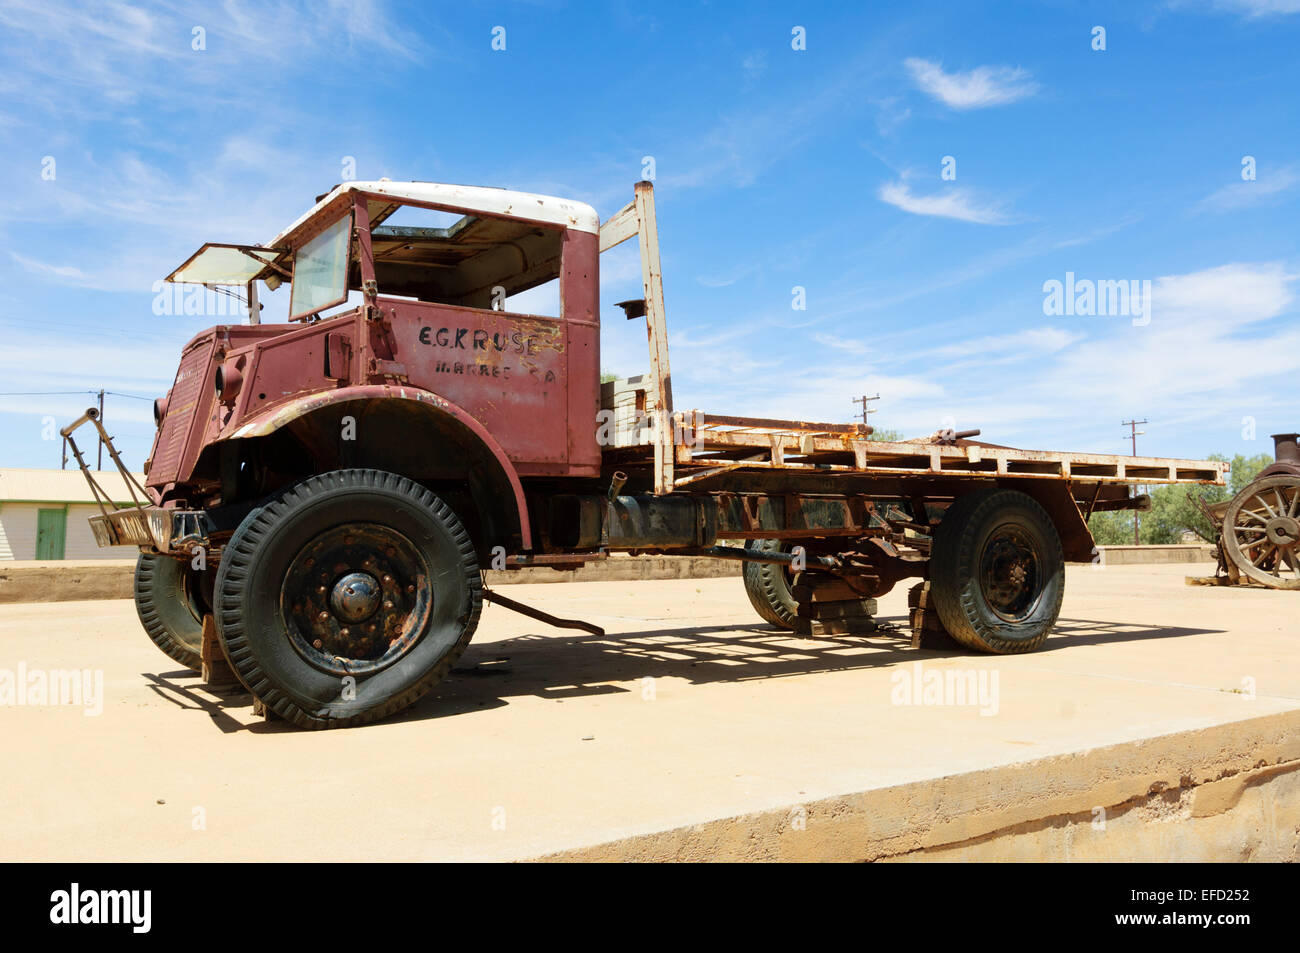 Tom Kruse's Royal Mail Truck, Marree, Oodnadatta Track, Outback, l'Australie du Sud, Australie Banque D'Images